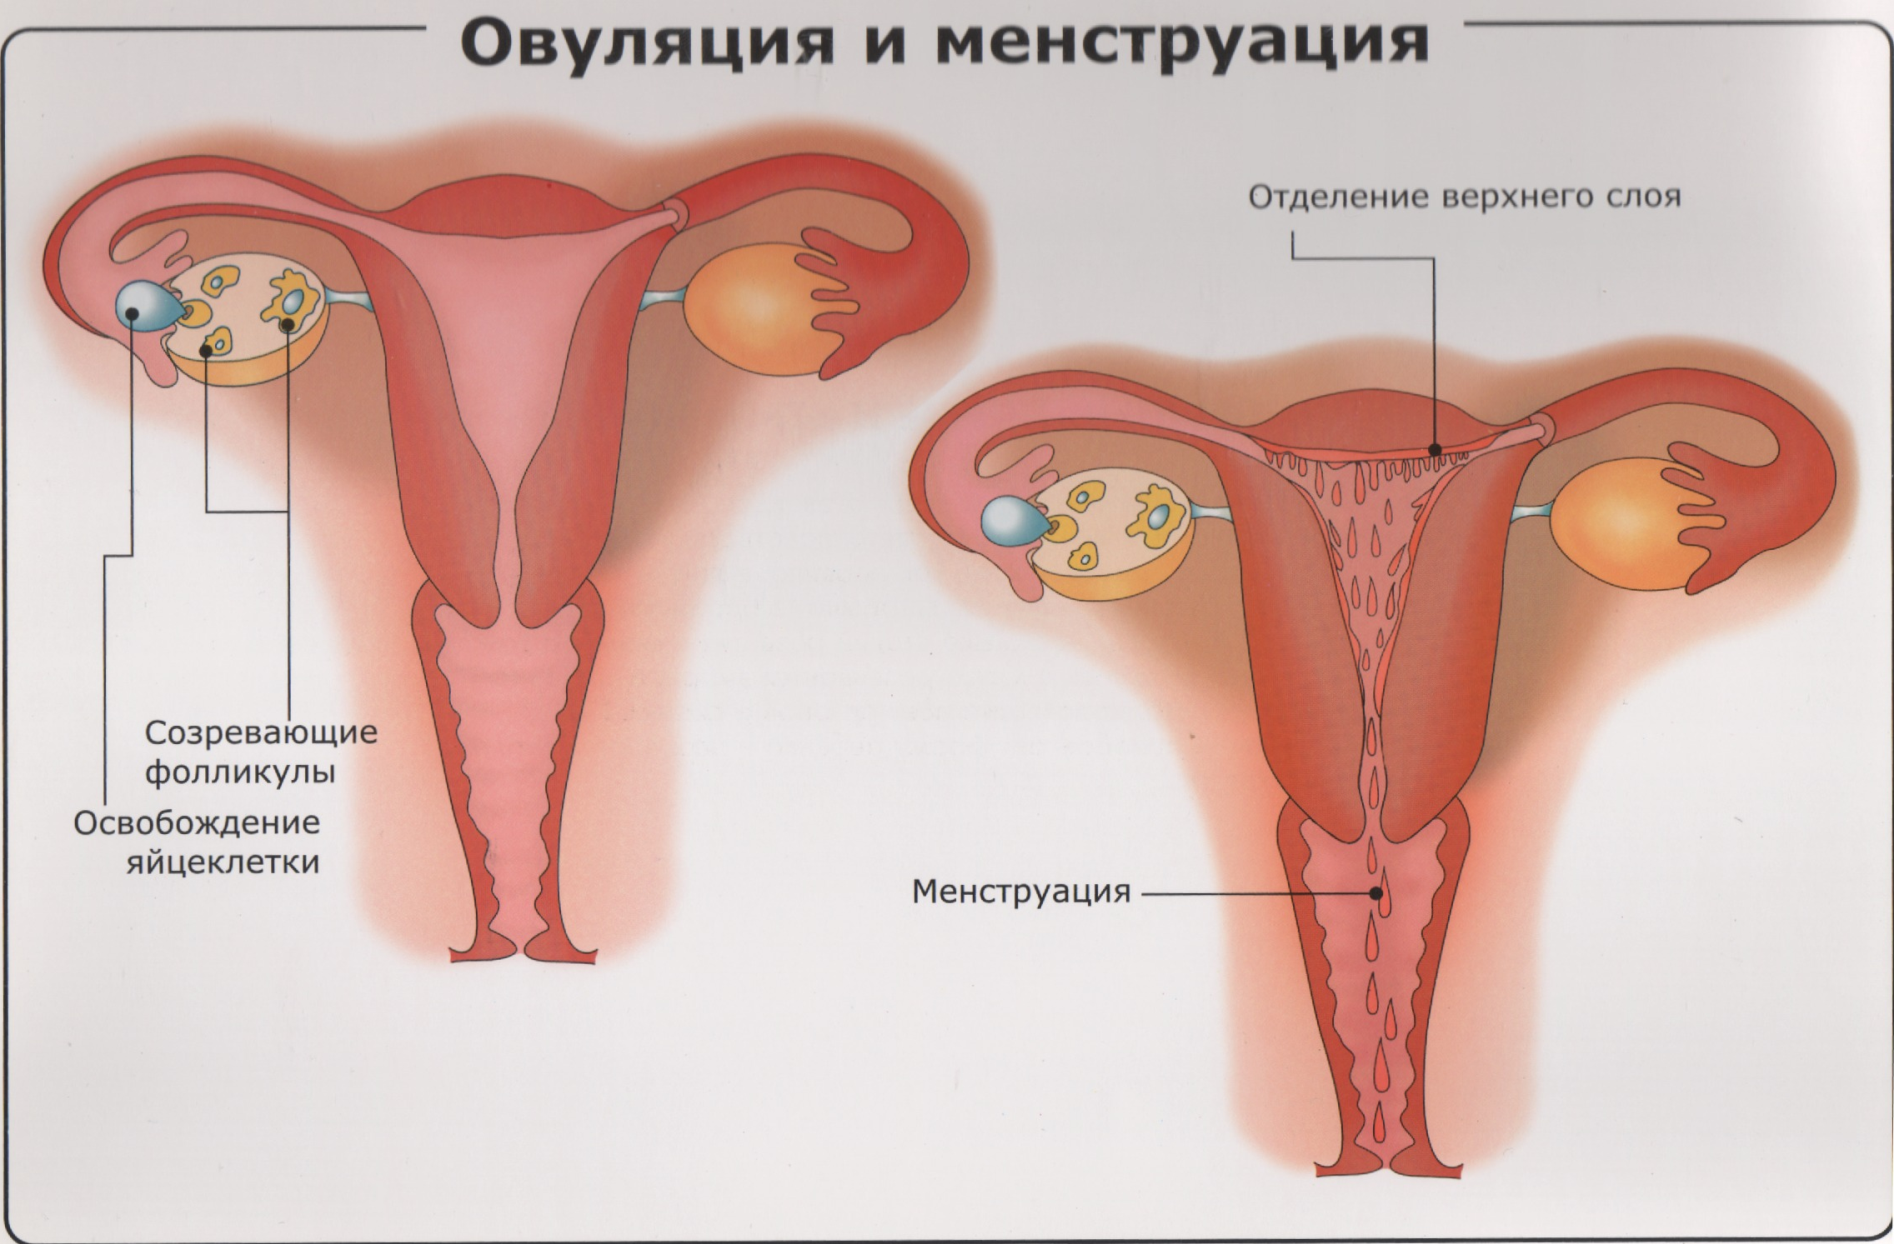 Овуляция и менструация